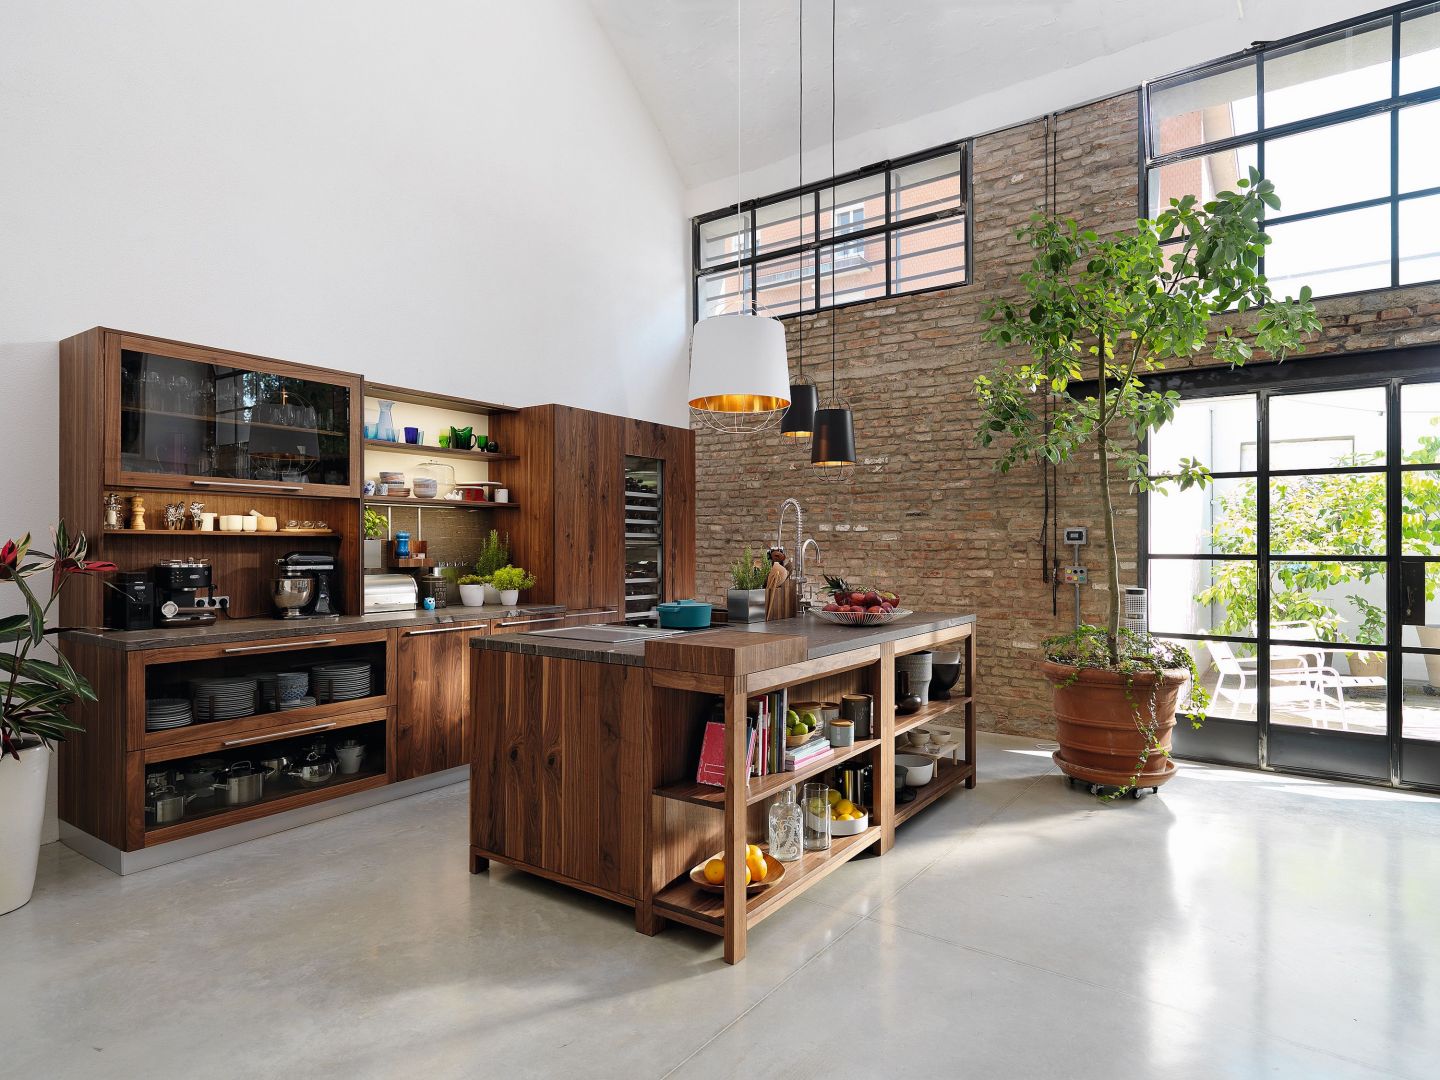 Loft to nowoczesna interpretacja tradycyjnej przestrzeni kuchennej. Stworzona z myślą o miłośnikach życia w zgodzie z naturą urzeka kunszt wykonania mebli drewnianych. Team7